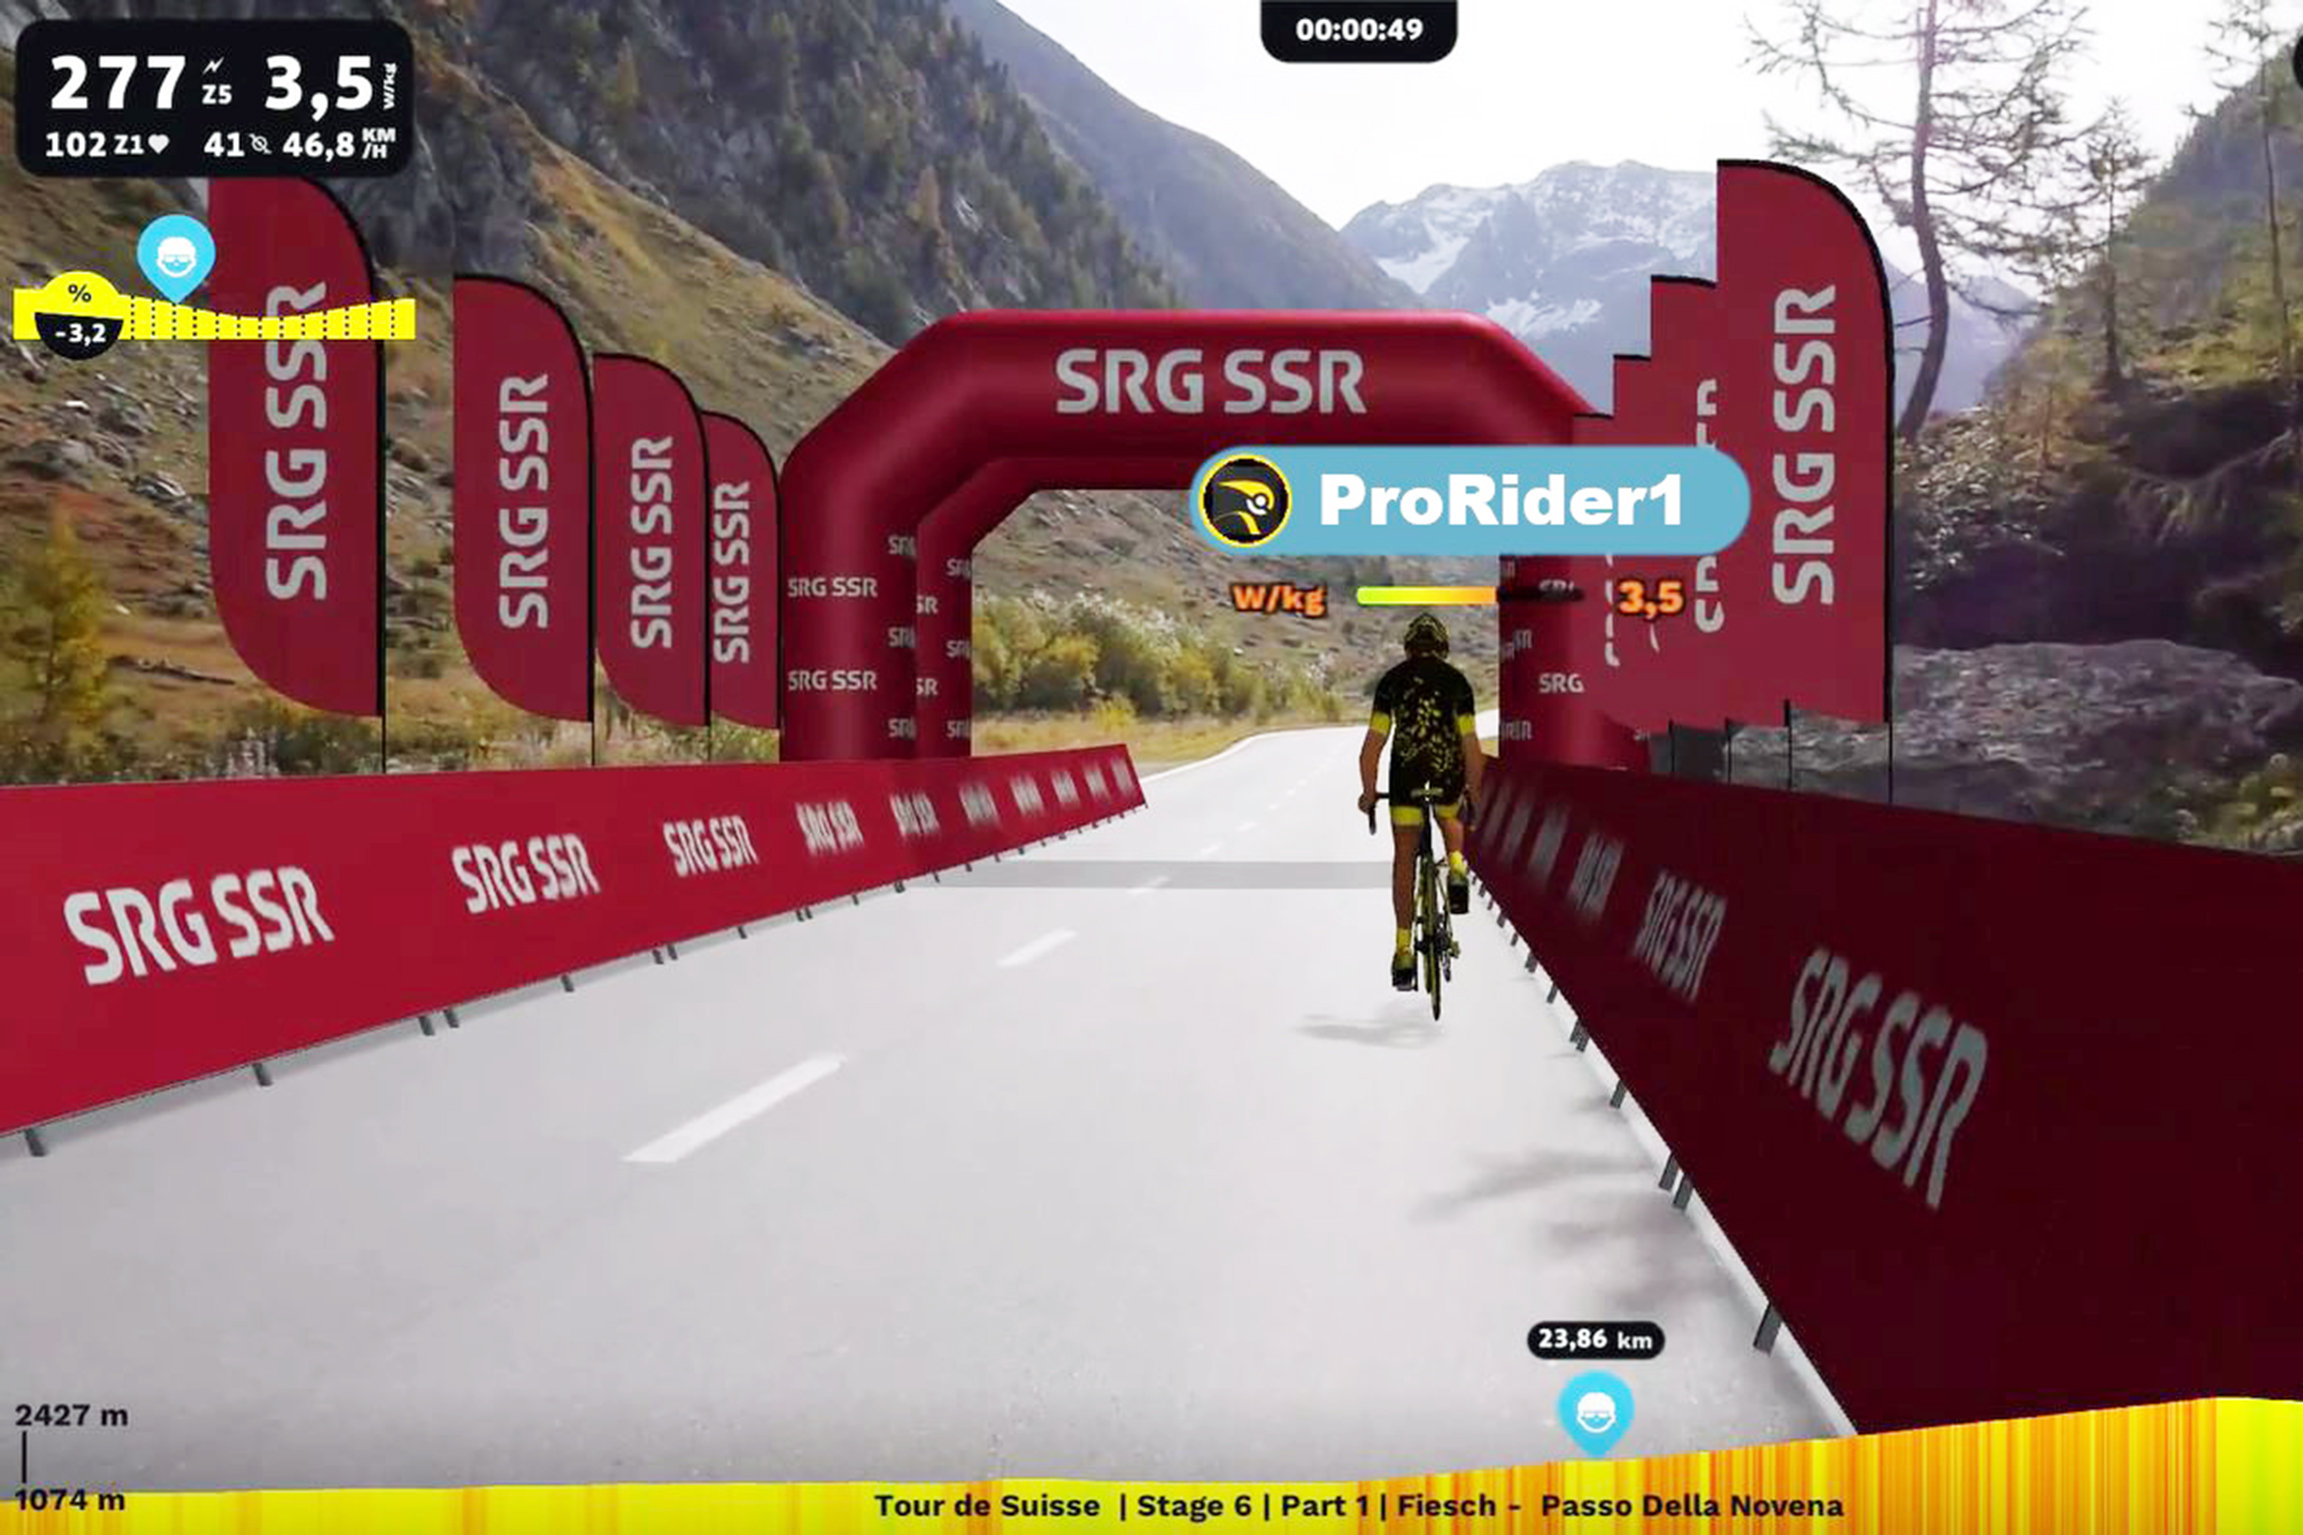 Radsport: The Digital Swiss 5 Ein digitales Radrennen der Tour de Suisse